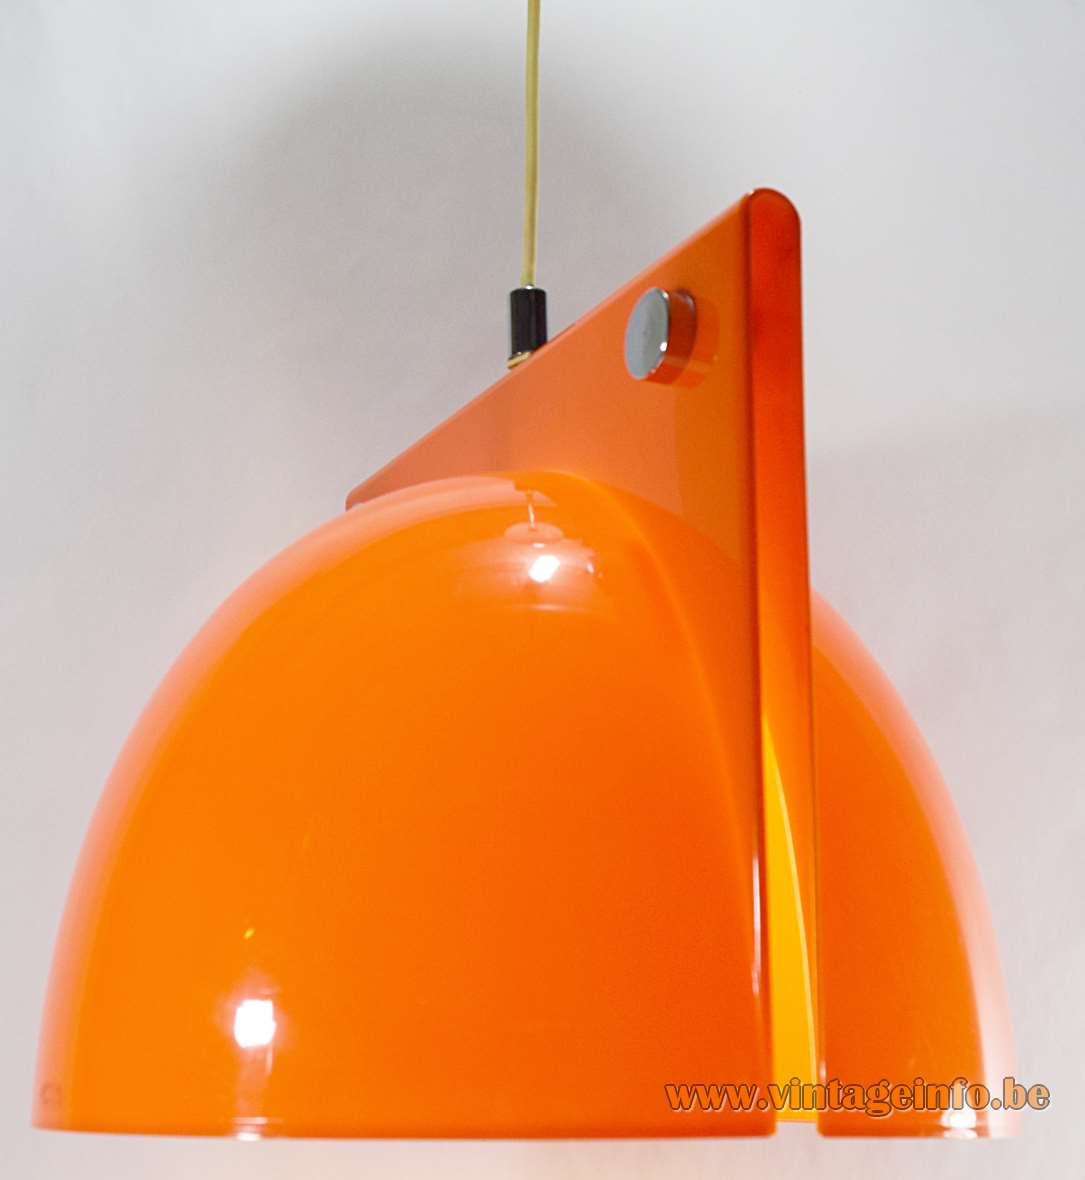 Harvey Guzzini Orione pendant lamp orange acrylic lampshade chrome nuts 1968 design: Lampa & Brazzoli 1960s 1970s